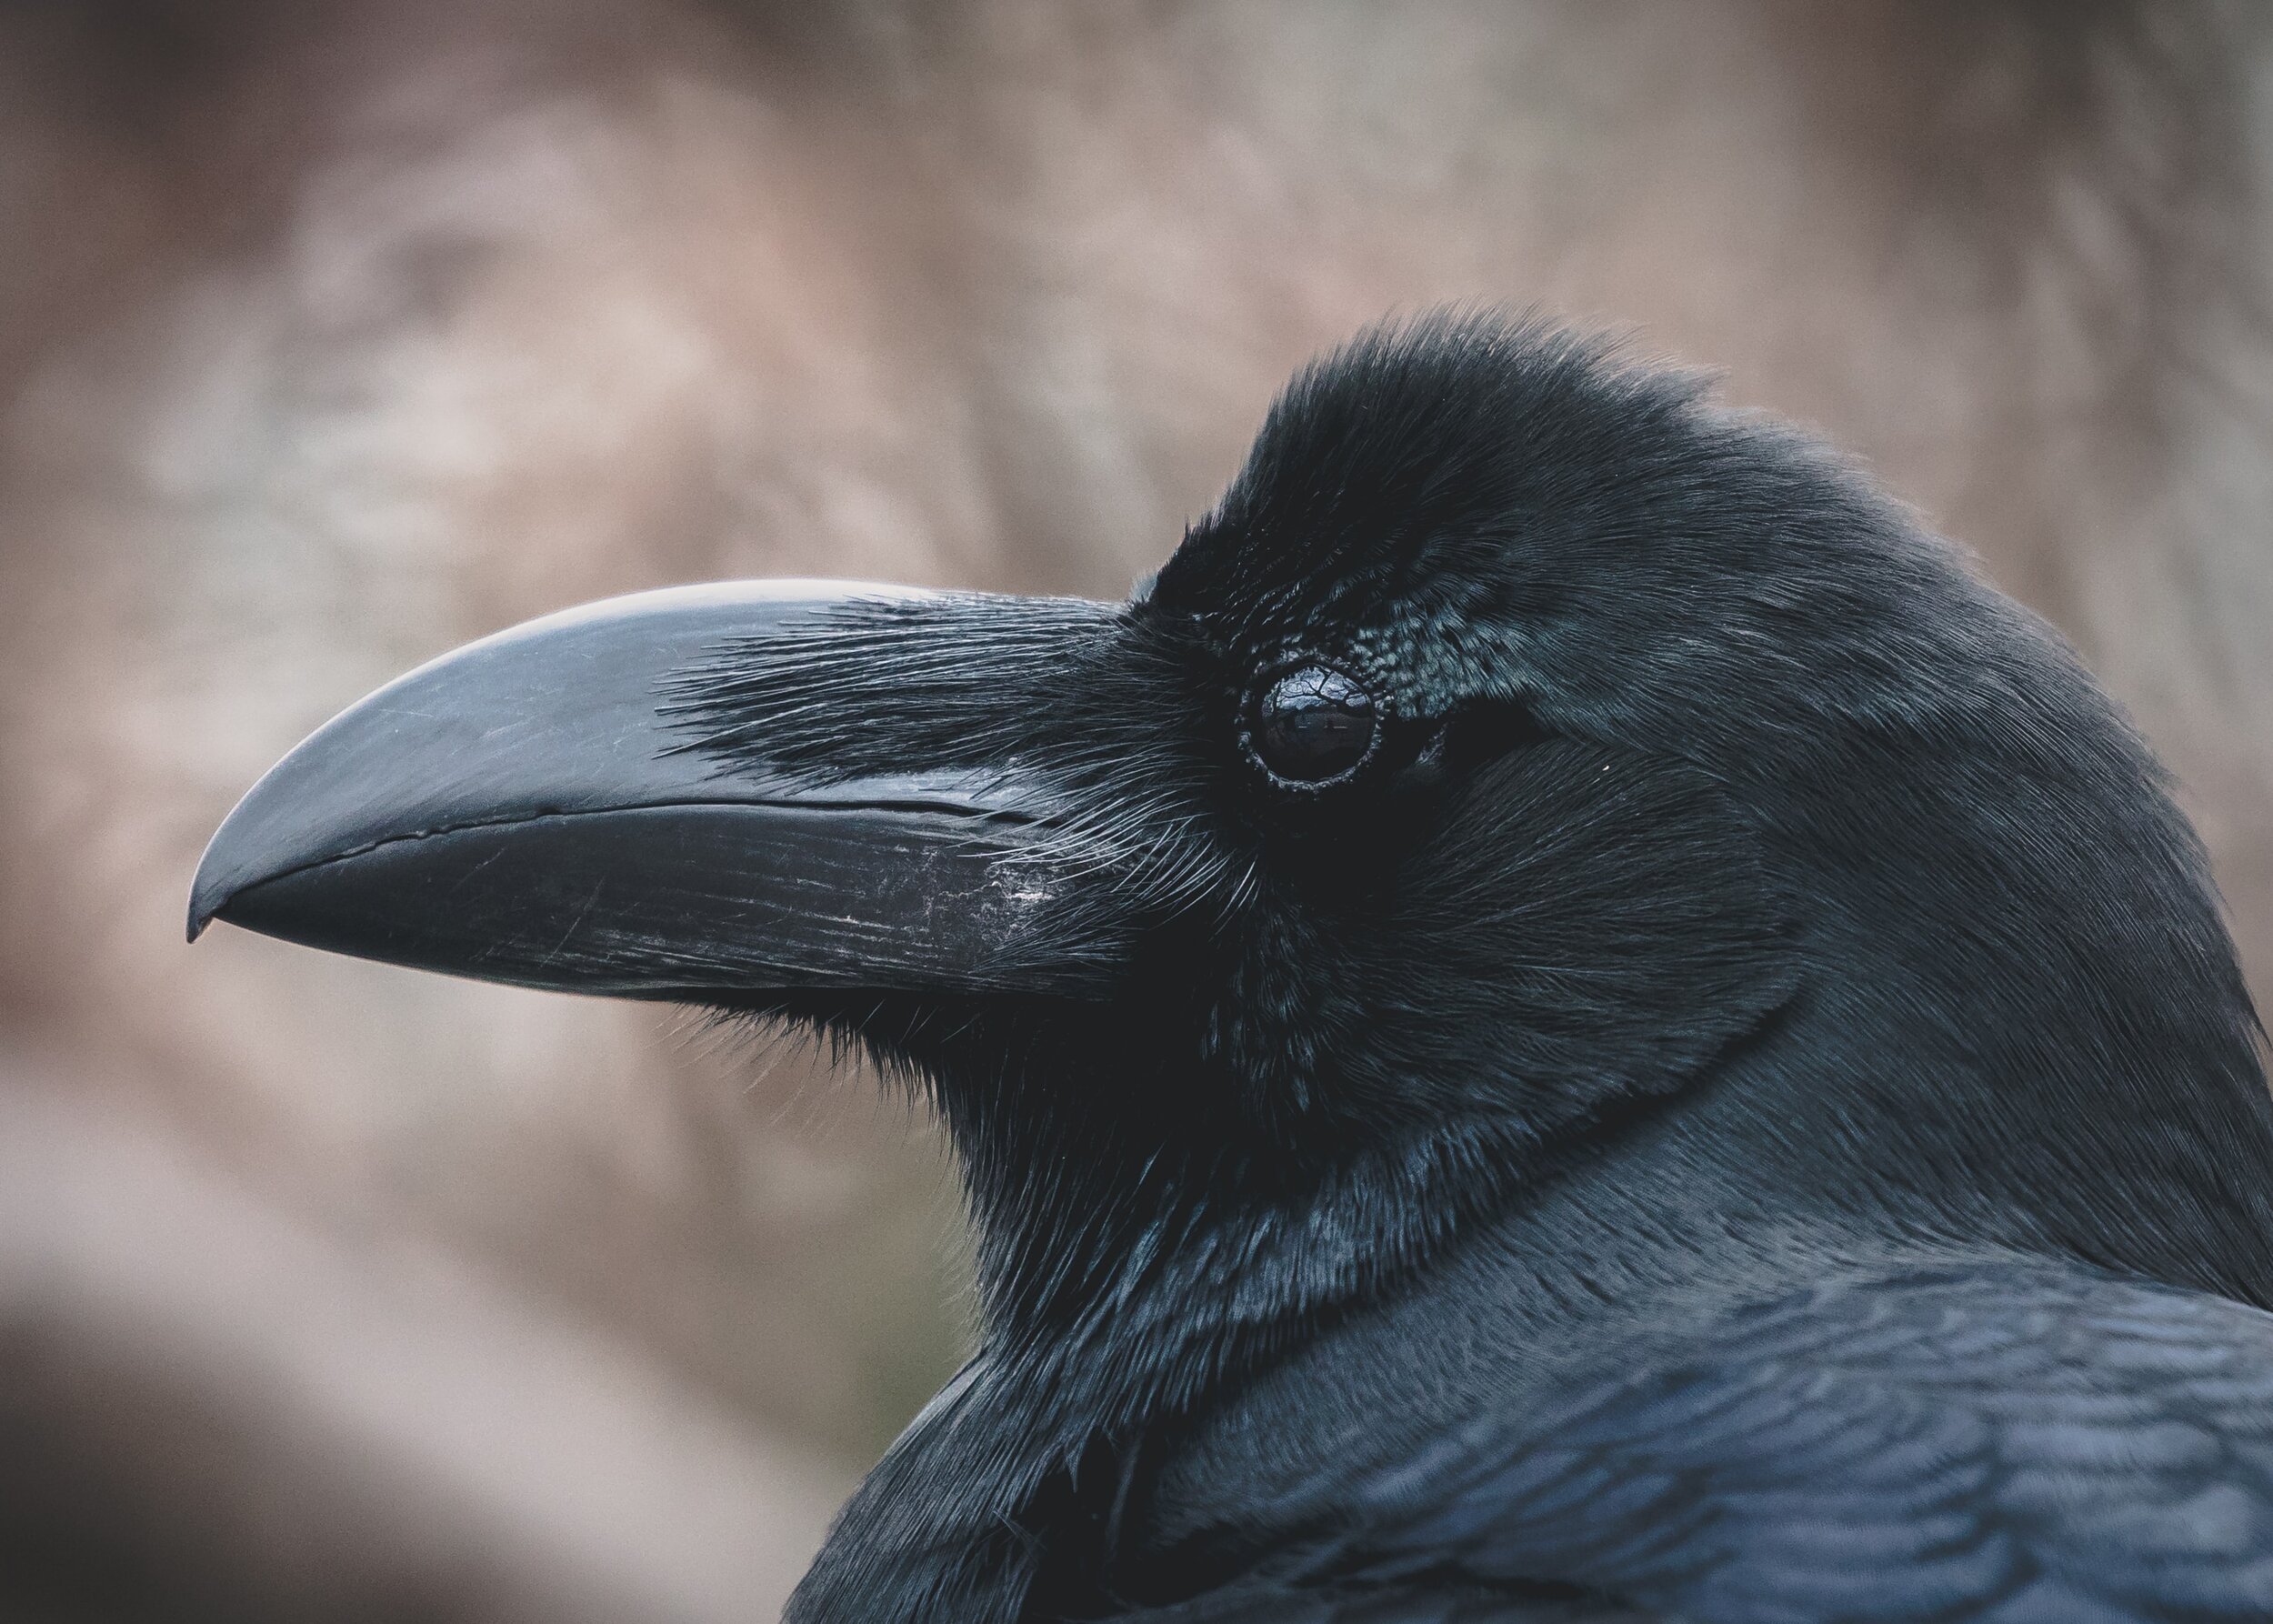 Omahkai: Raven